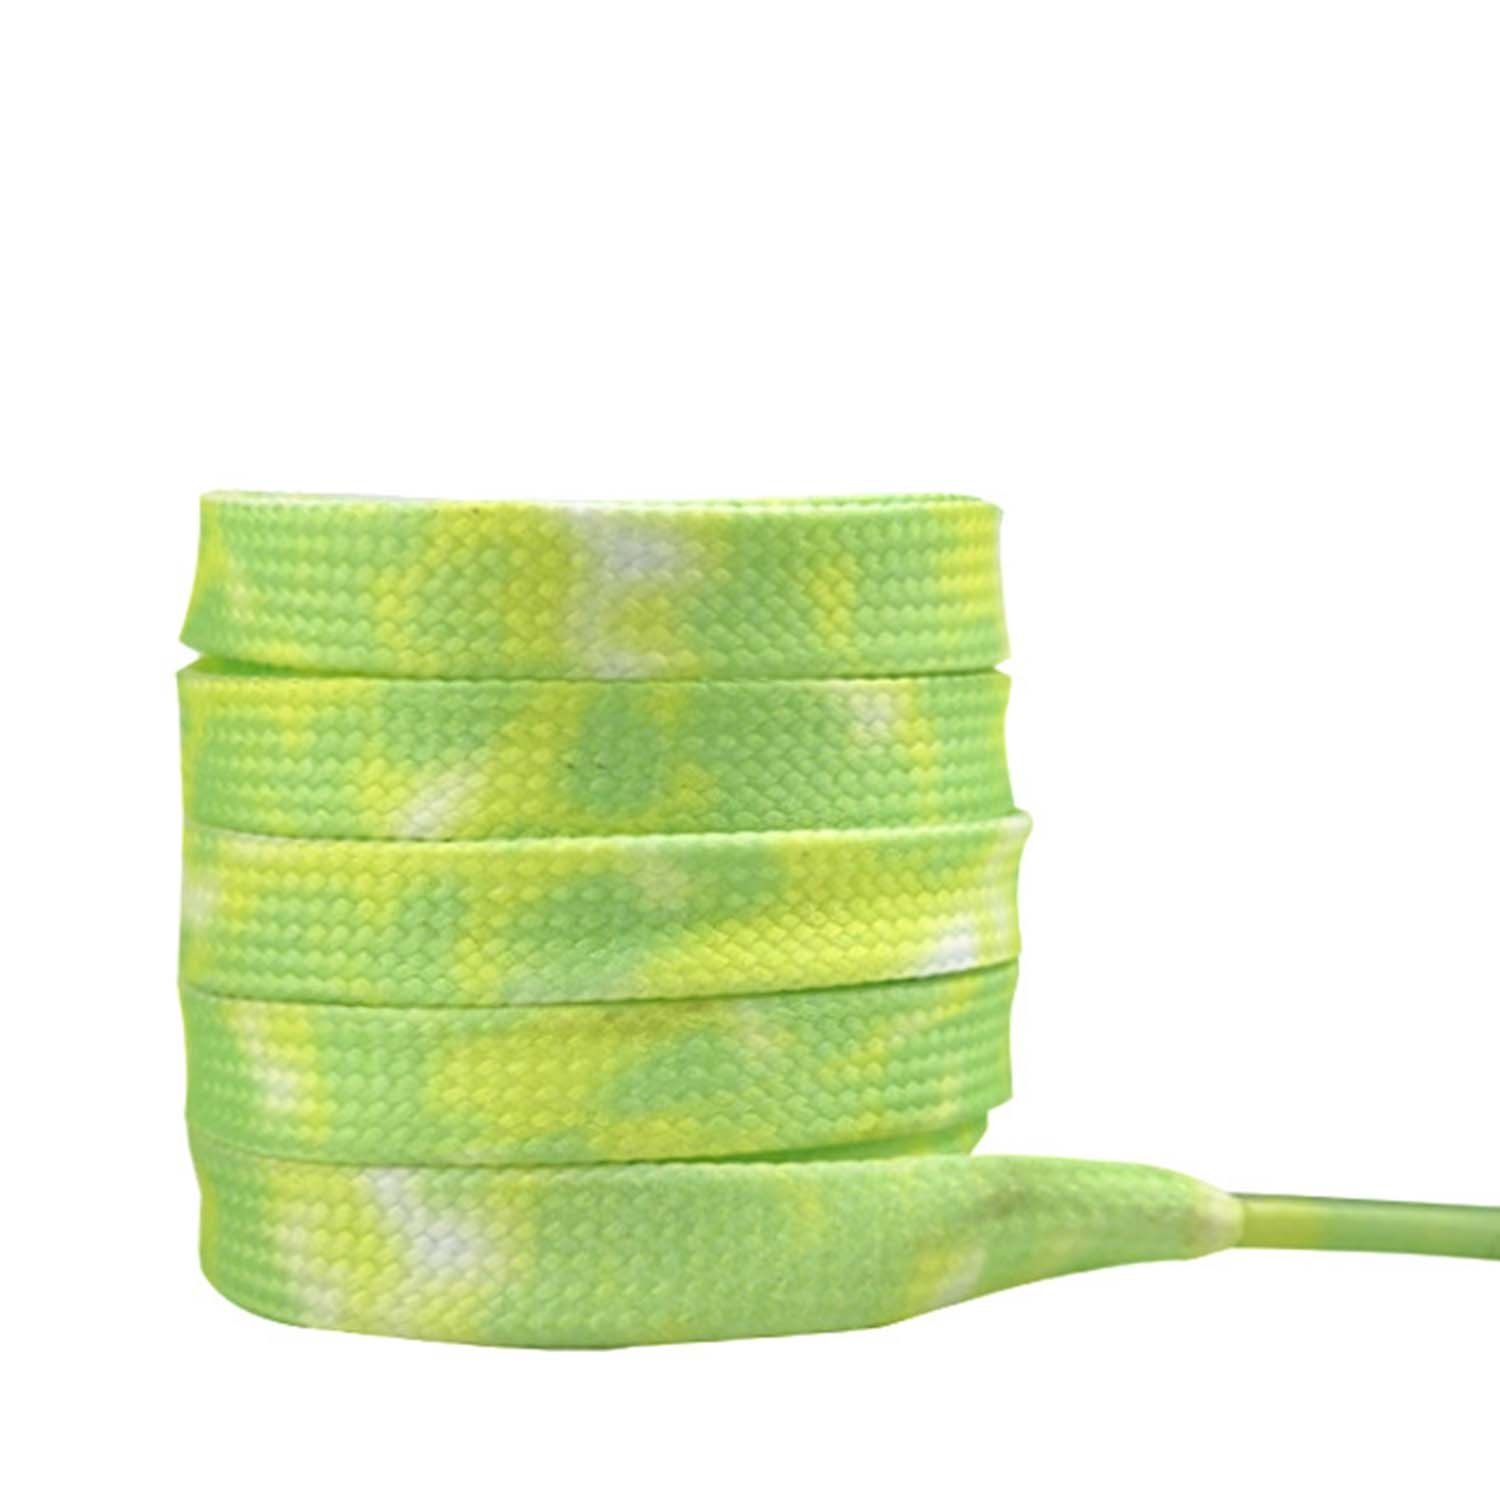 Ersatz 8 mm Grün Paar Flache Schuhbänder Schnürsenkel für 1 Daisred Turnschuhe Bunte